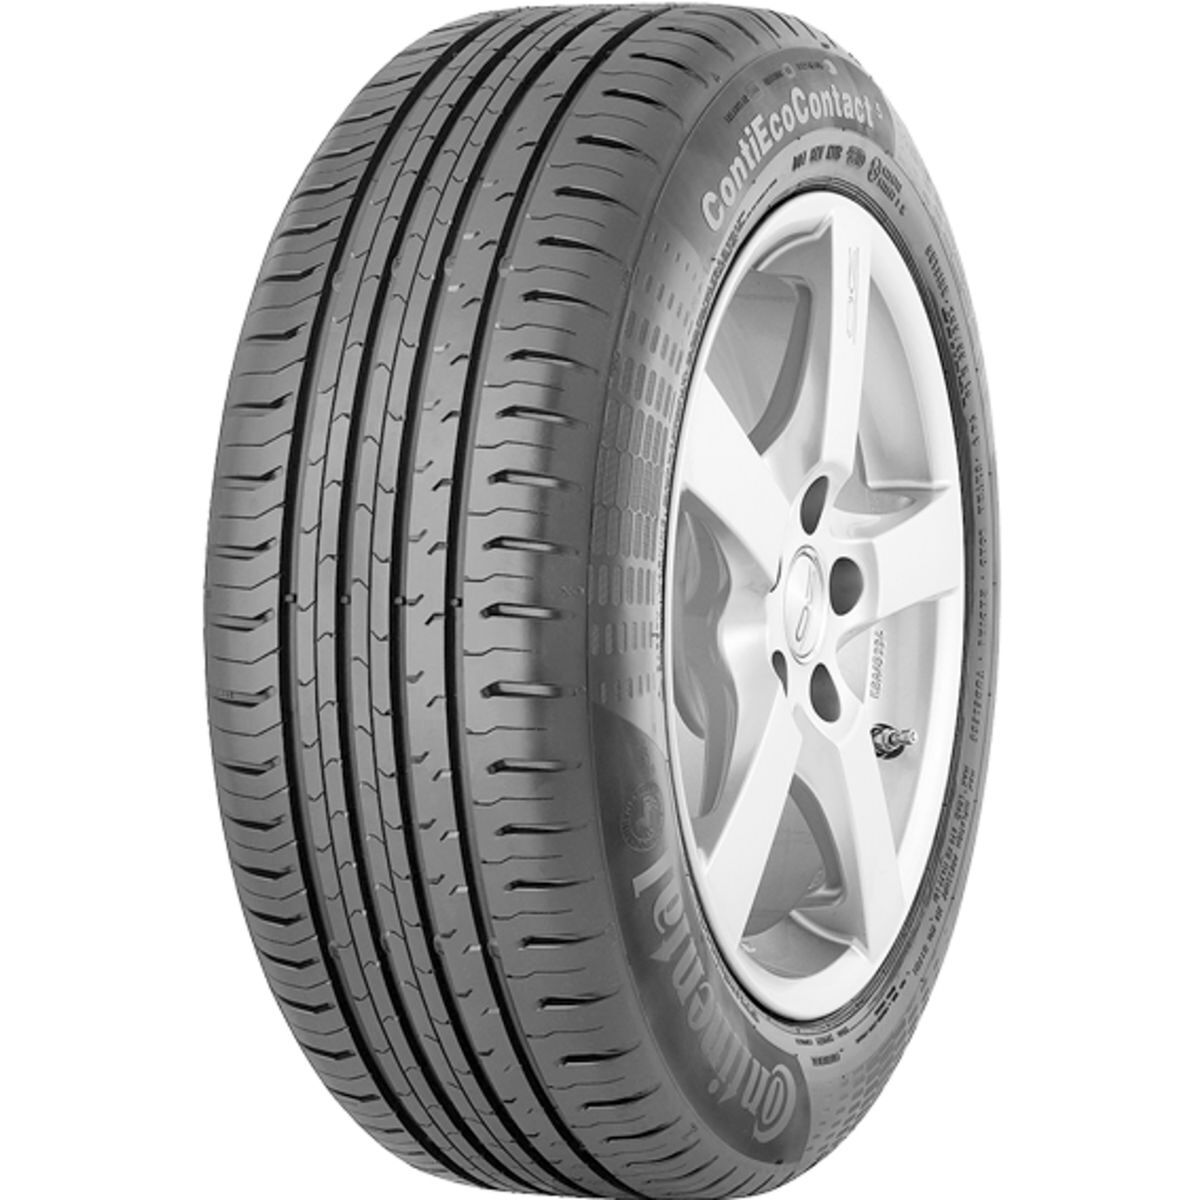 Neumáticos de verano CONTINENTAL ContiEcoContact 5 235/55R17 XL 103H